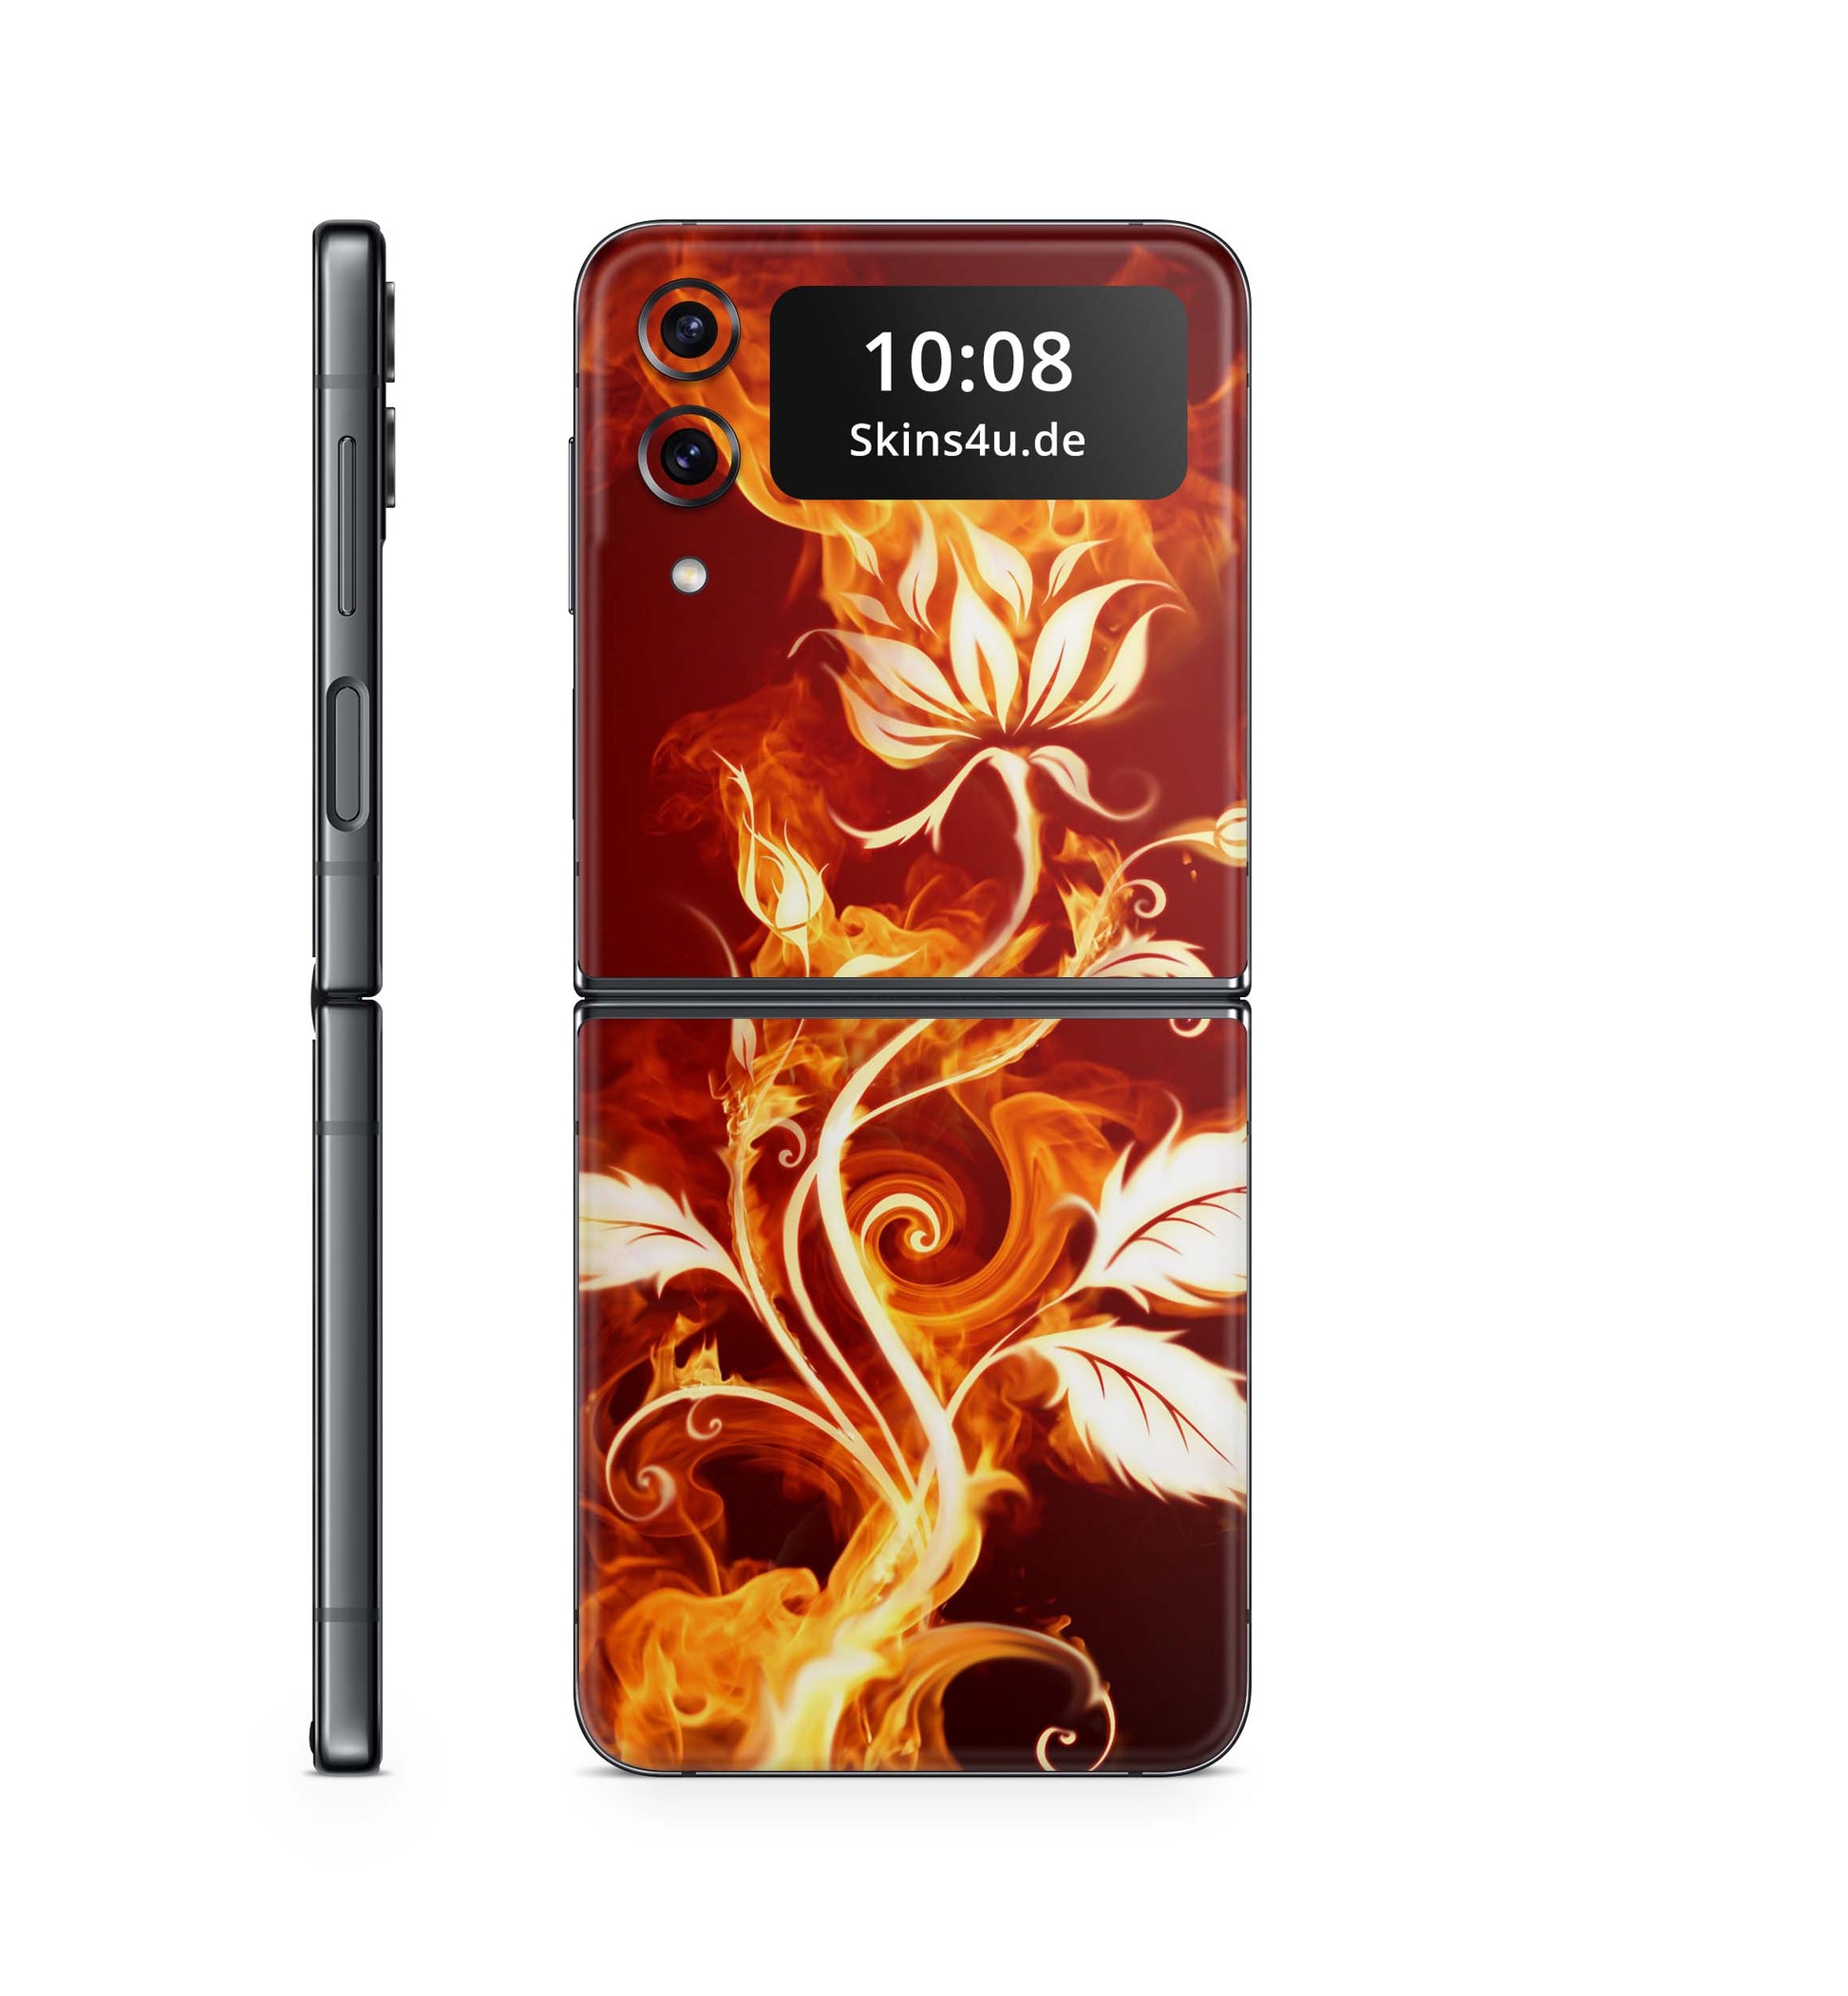 Samsung Galaxy Z Flip 3 Flip 4 Skin Handy Folie Premium Flower of Fire Aufkleber Skins4u   